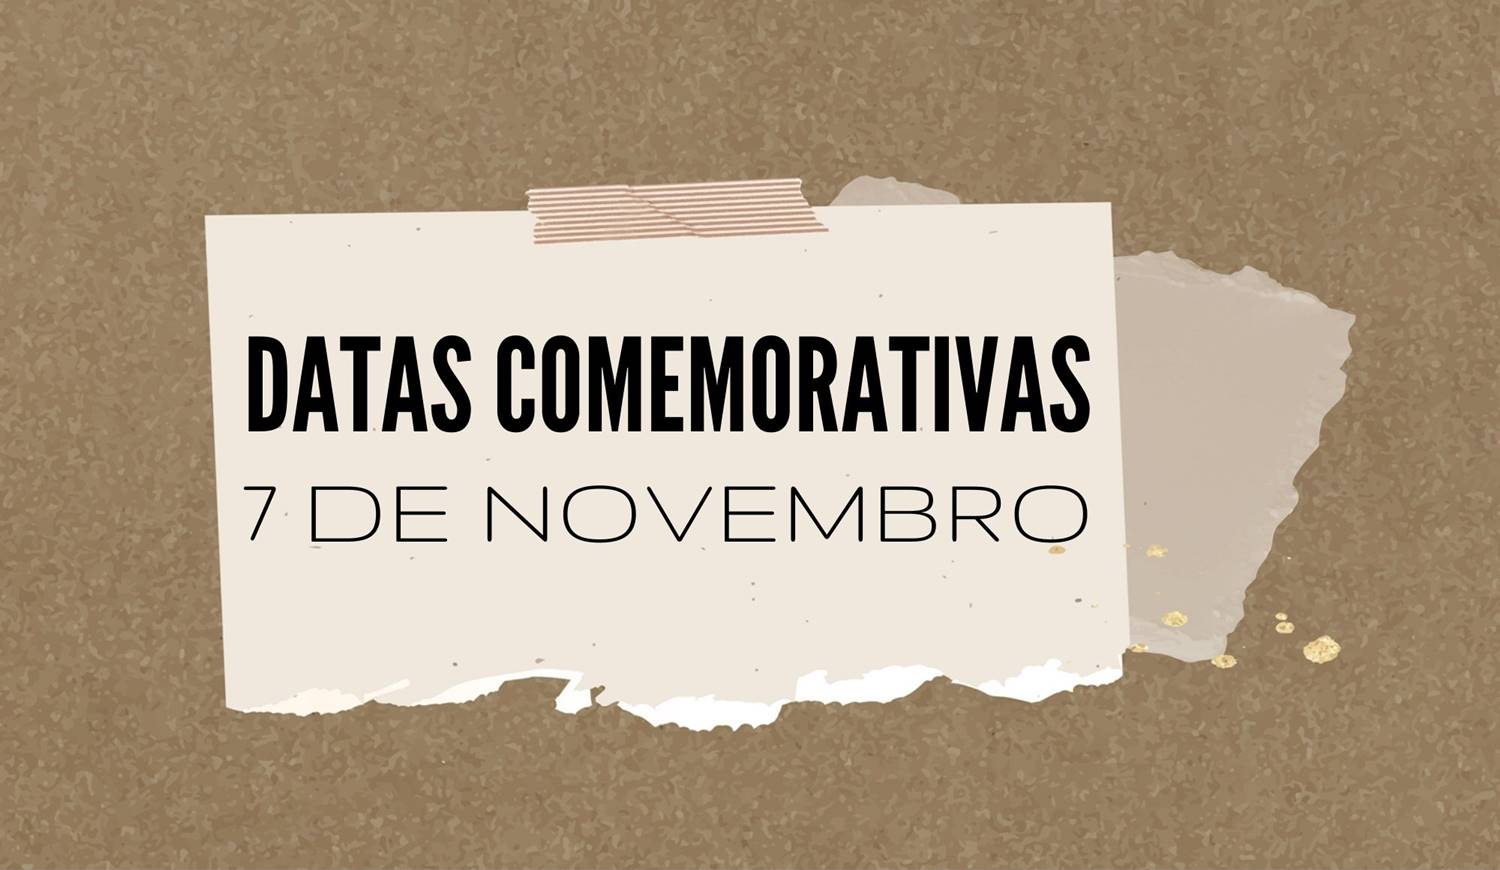 Foto com a frase: "Datas Comemorativas - 7 de novembro".